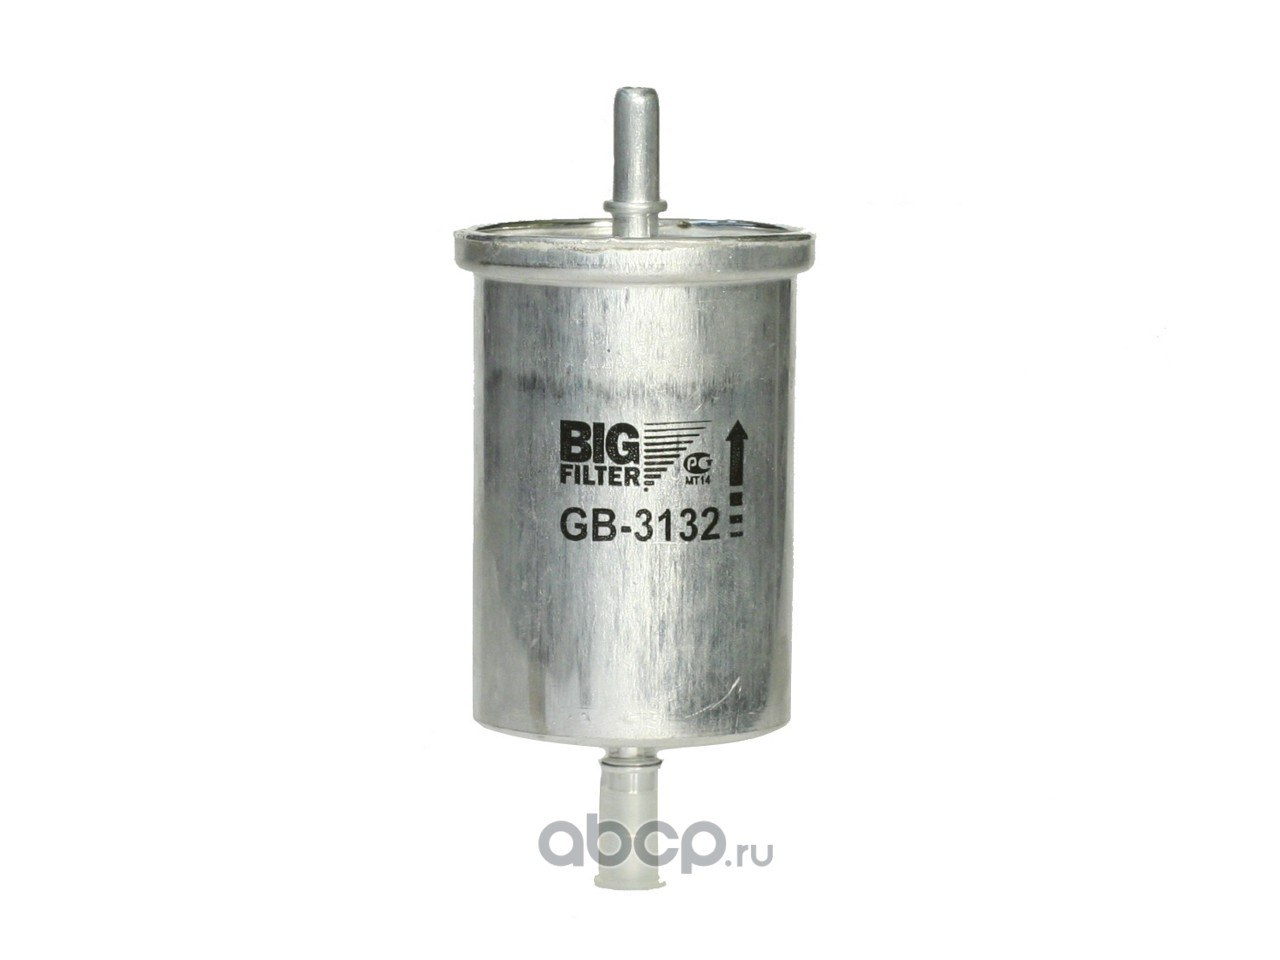 Фильтр топливный BIG FILTER GB-3132